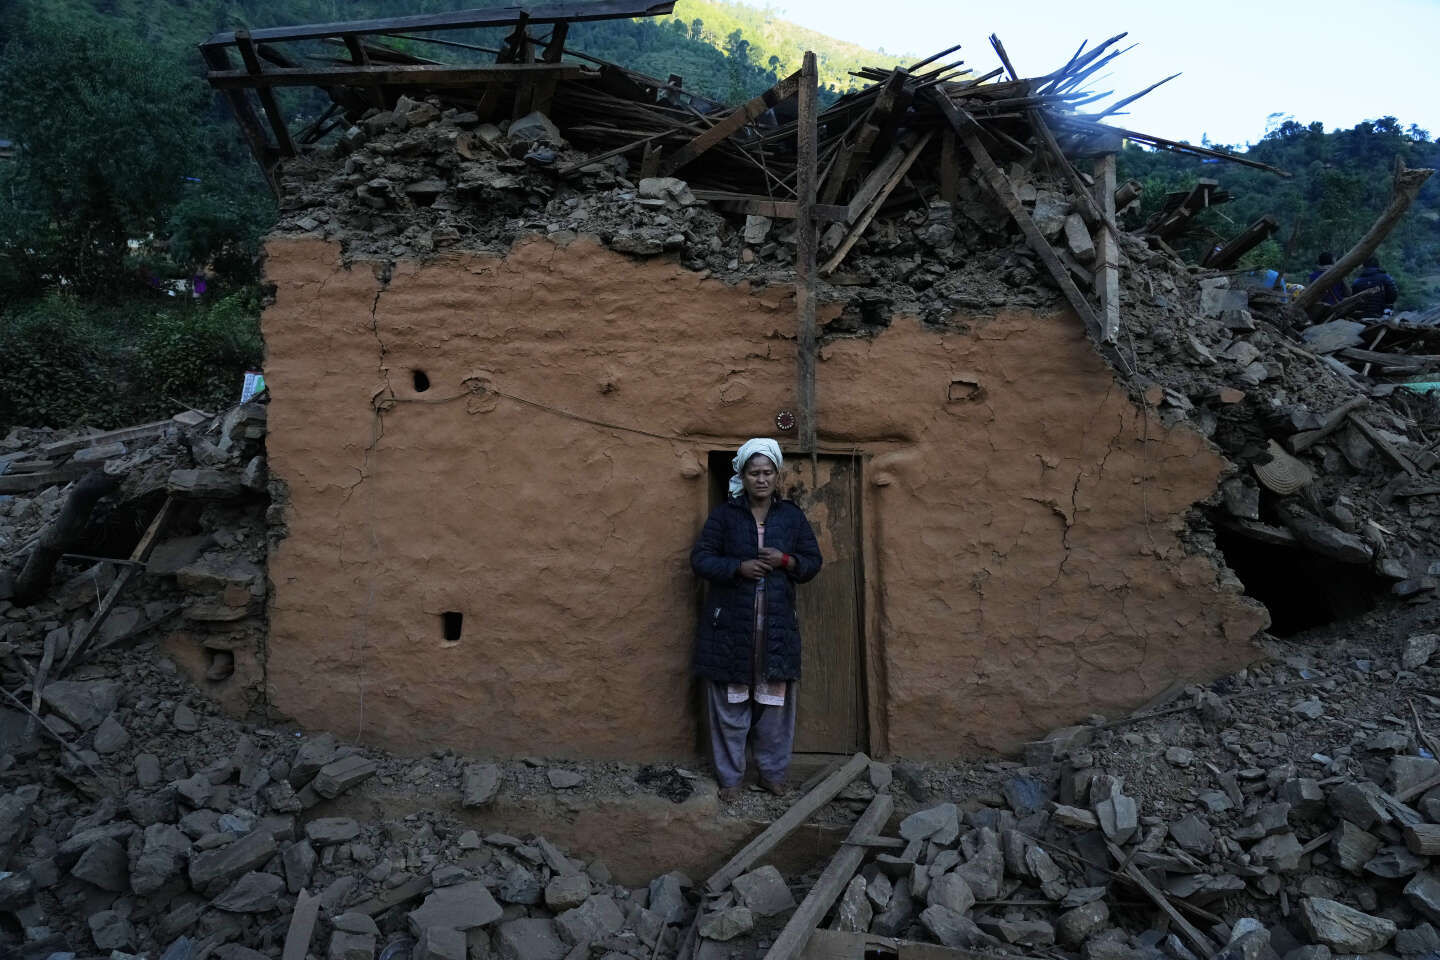 Enclin aux séismes, le Népal subit un nouveau tremblement de terre